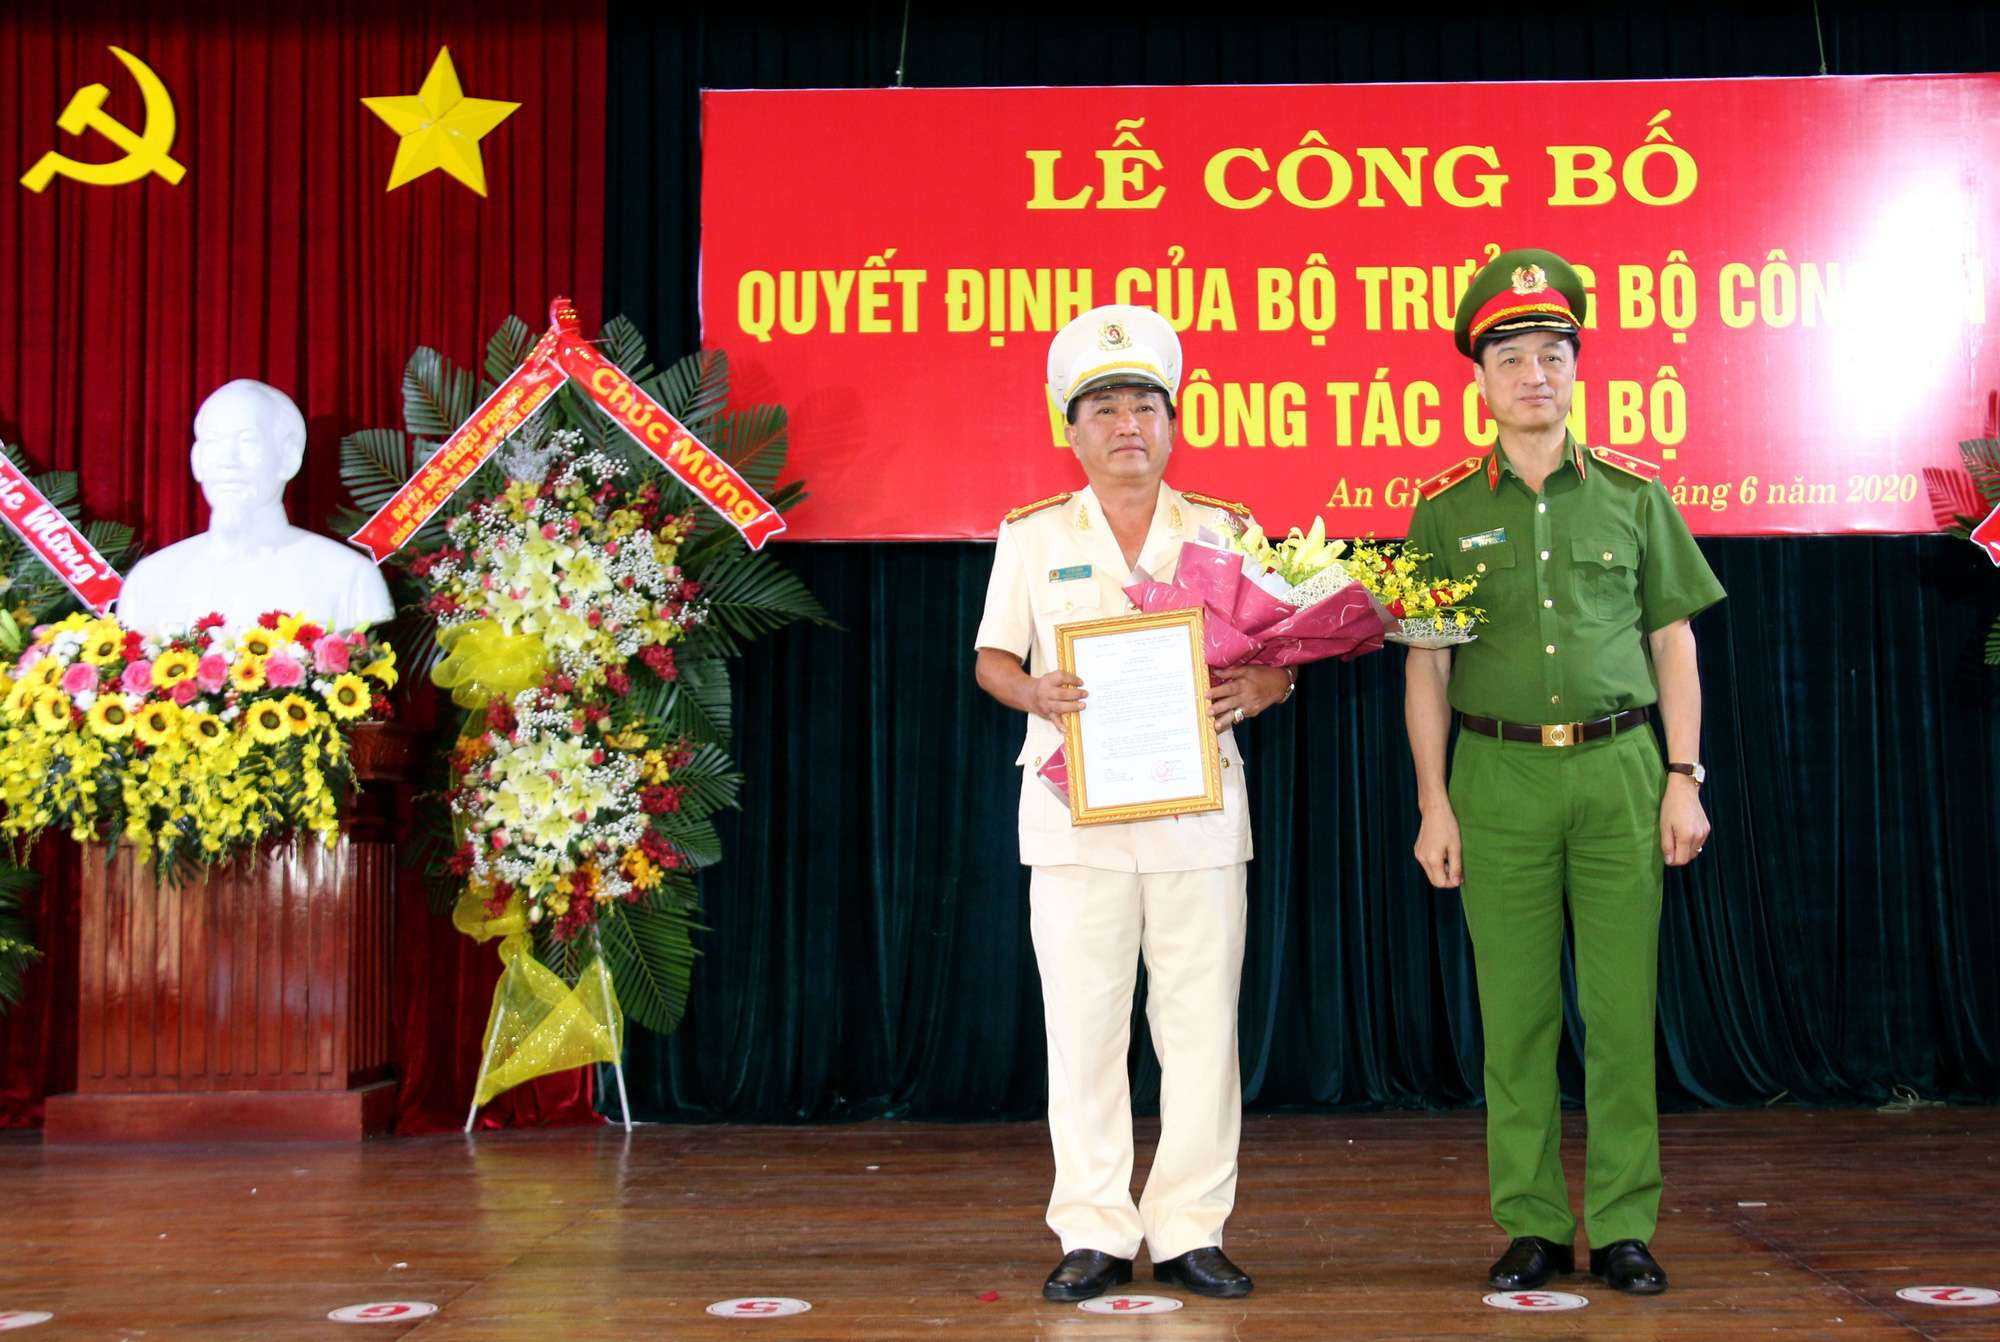 Phó Giám đốc Công an TP Cần Thơ được bổ nhiệm làm Giám đốc Công an tỉnh An Giang - Ảnh 1.